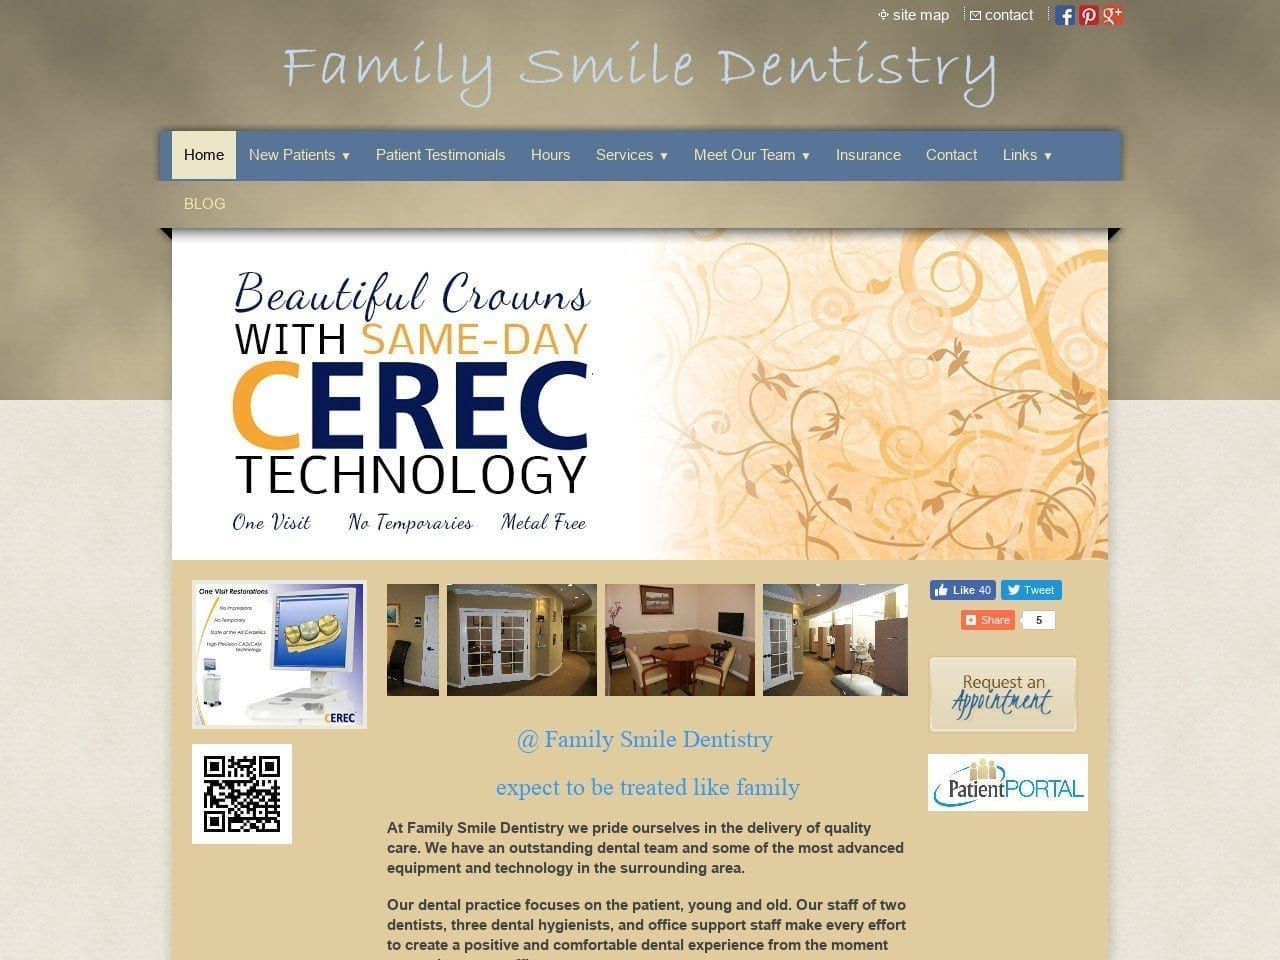 Family Smile Dentistry Website Screenshot from familysmiledentistry.com